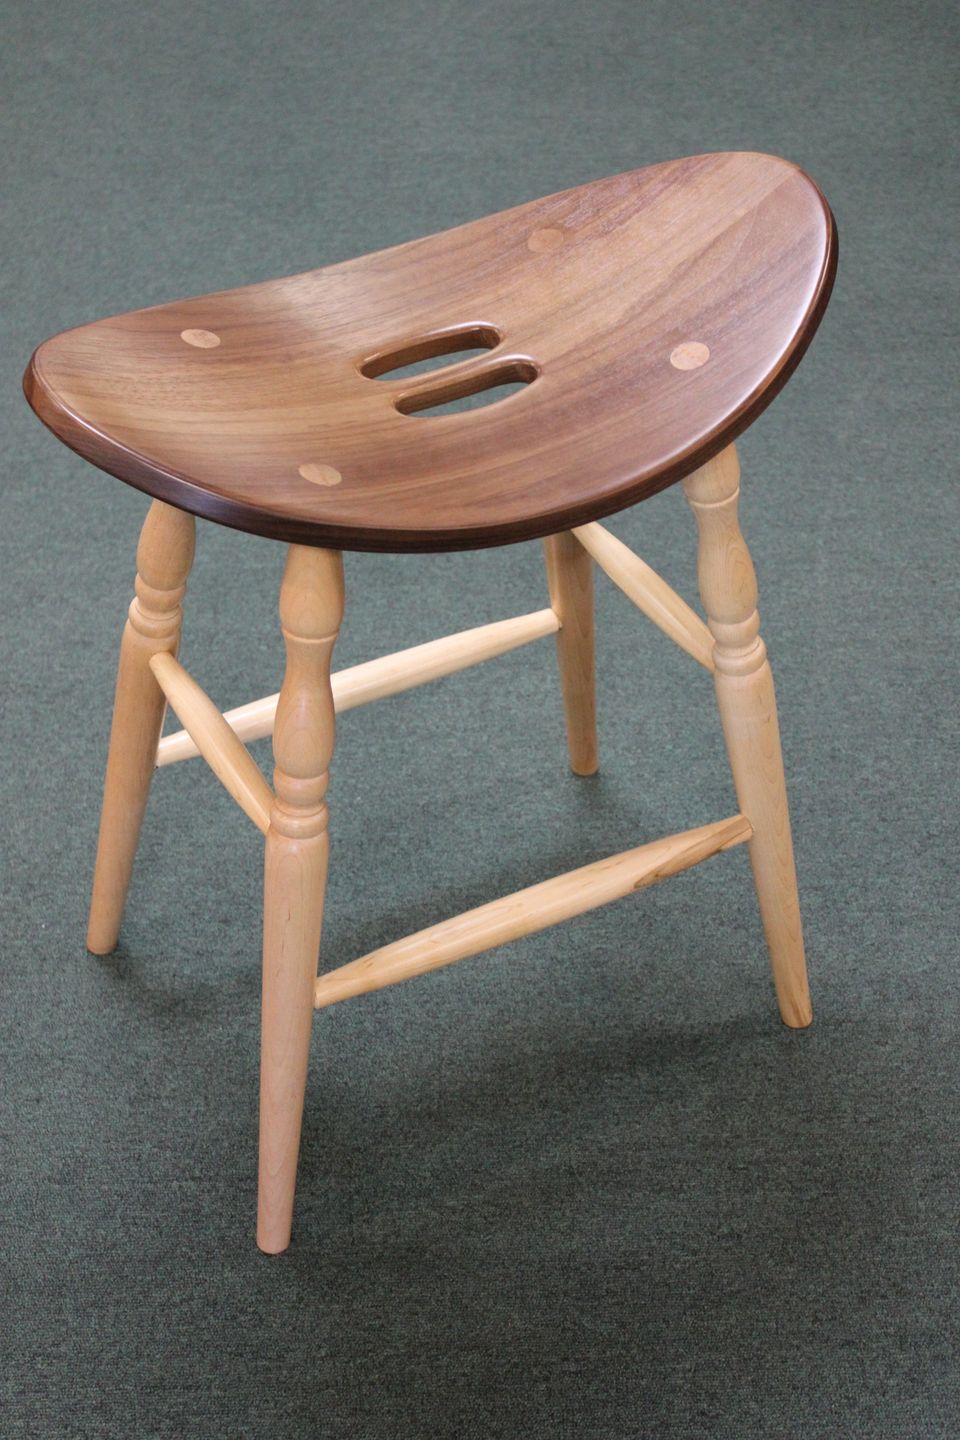 Oakl saddle stool